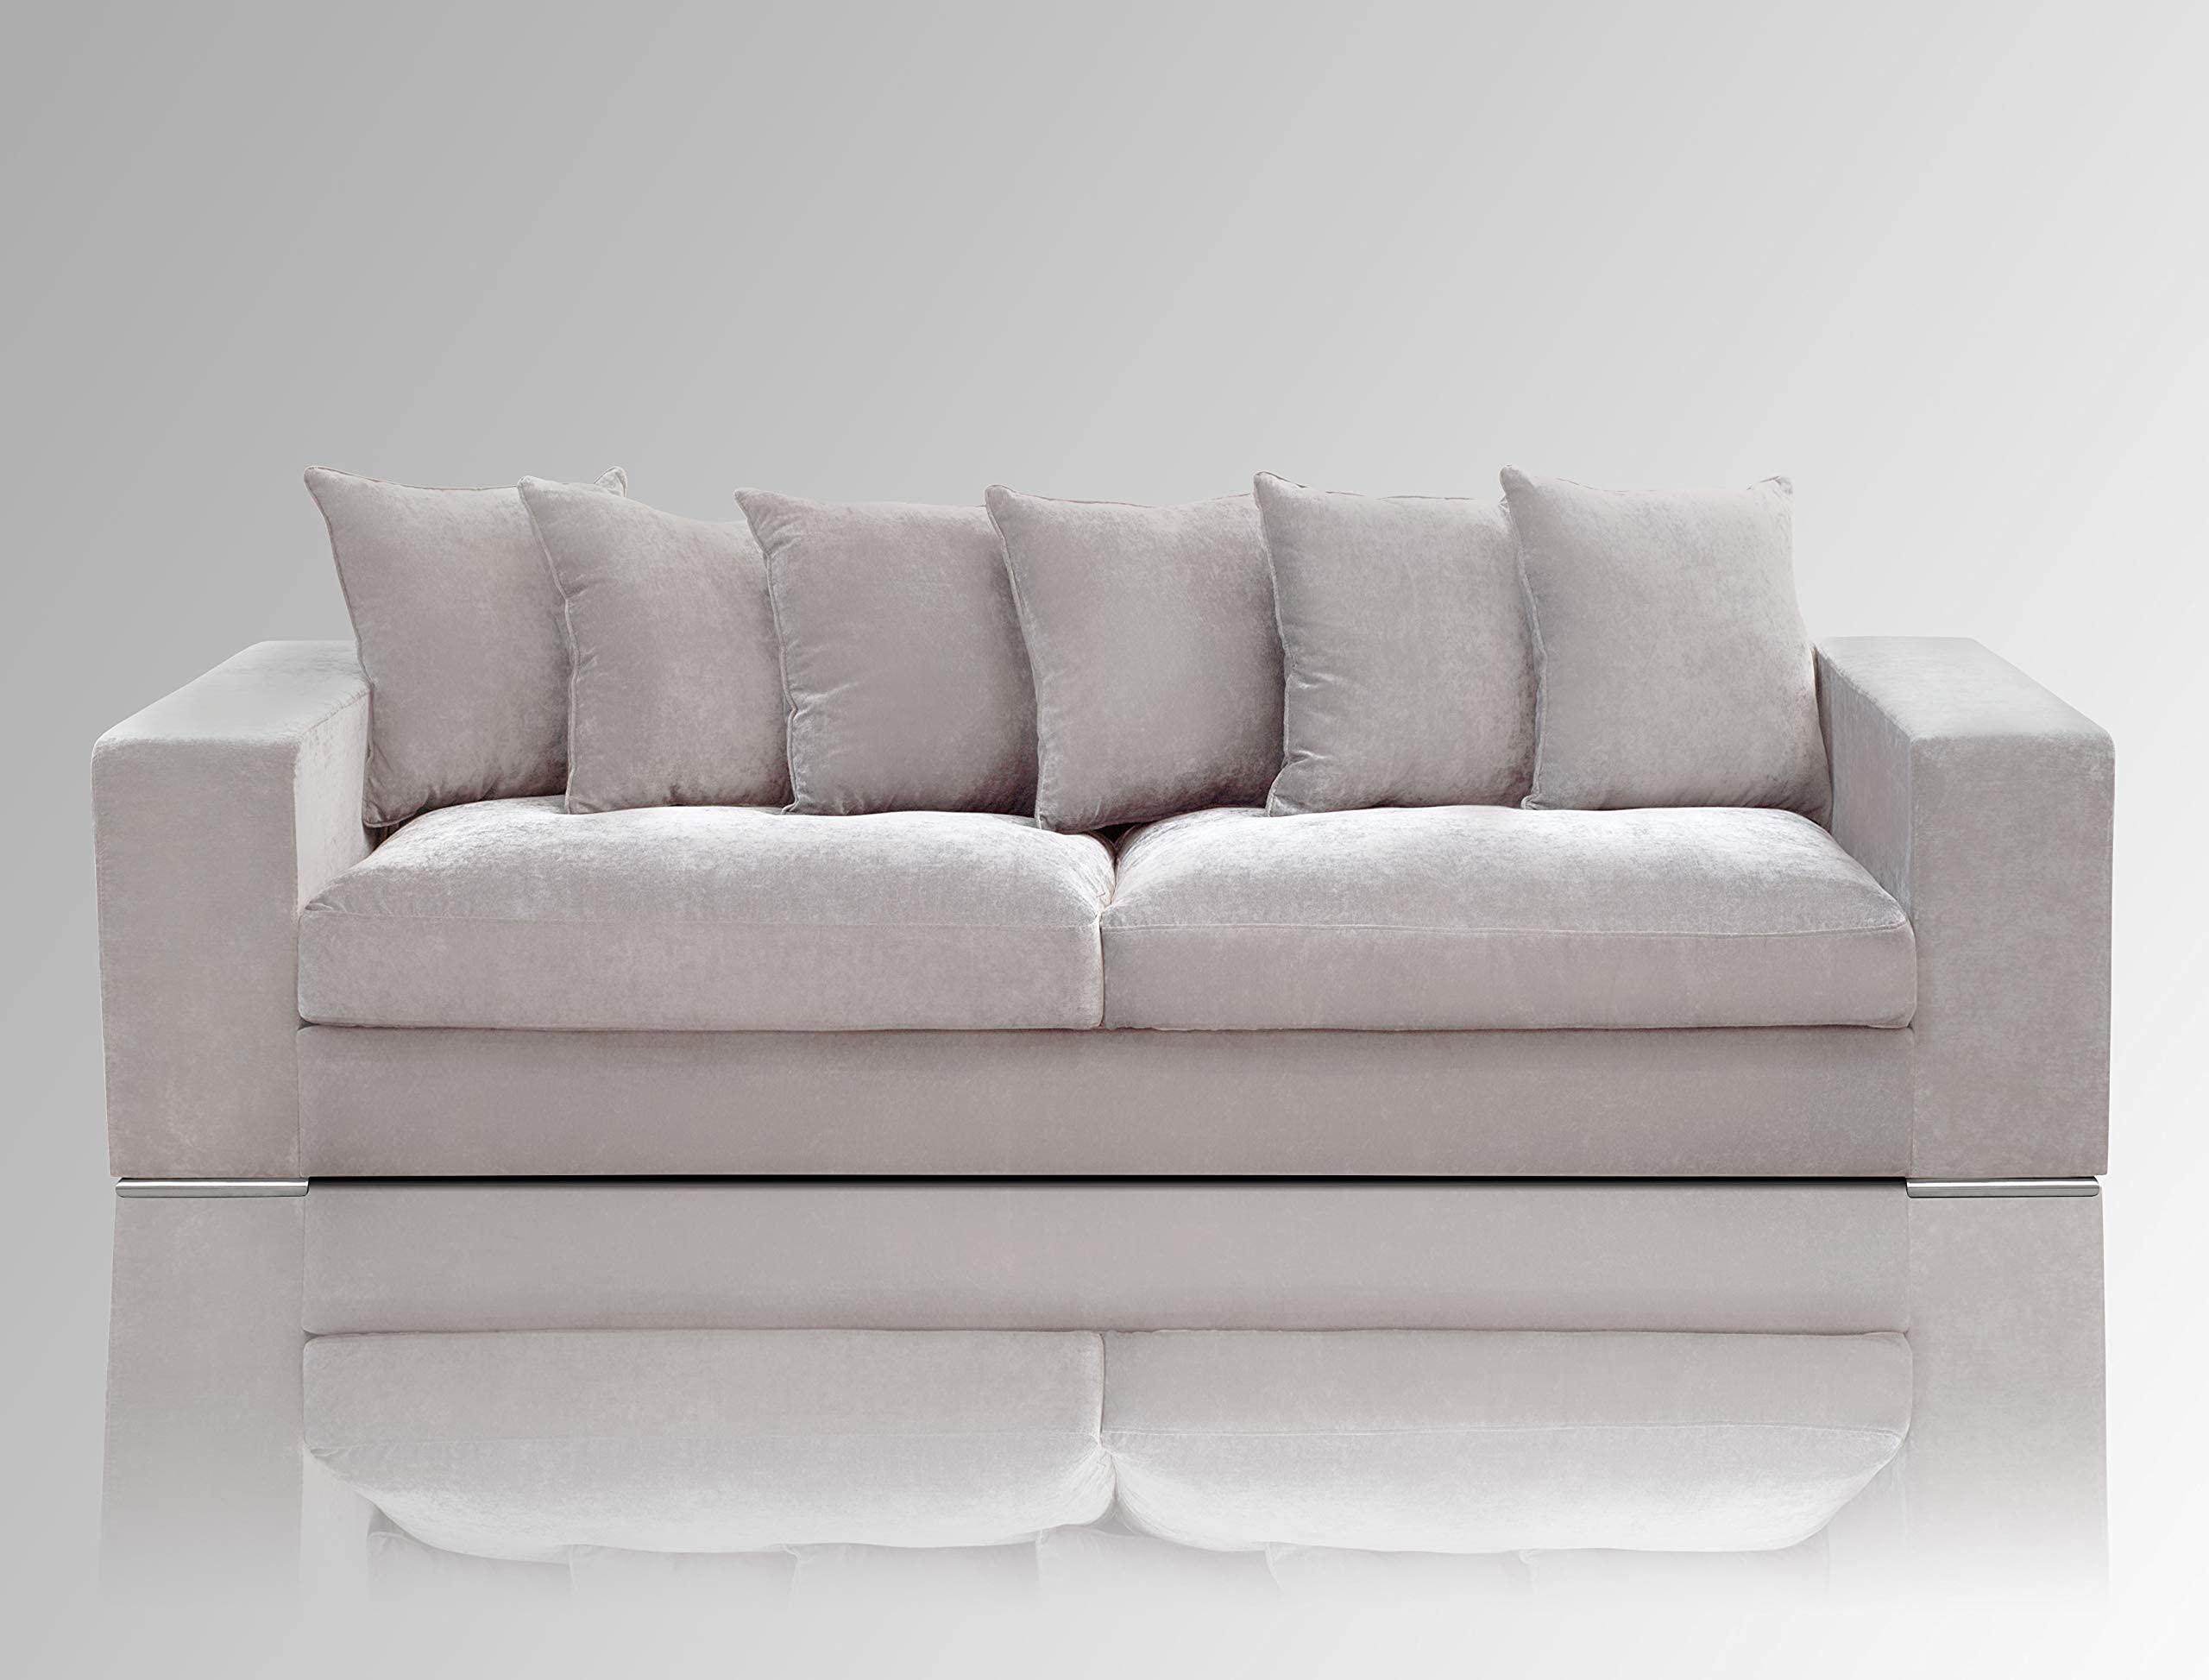 Amaris Elements | Big Sofa 'Monroe' Samtbezug 4 Sitzer Wohnzimmer XL Couch grau 2.65m in 5 Farben + 4 Größen